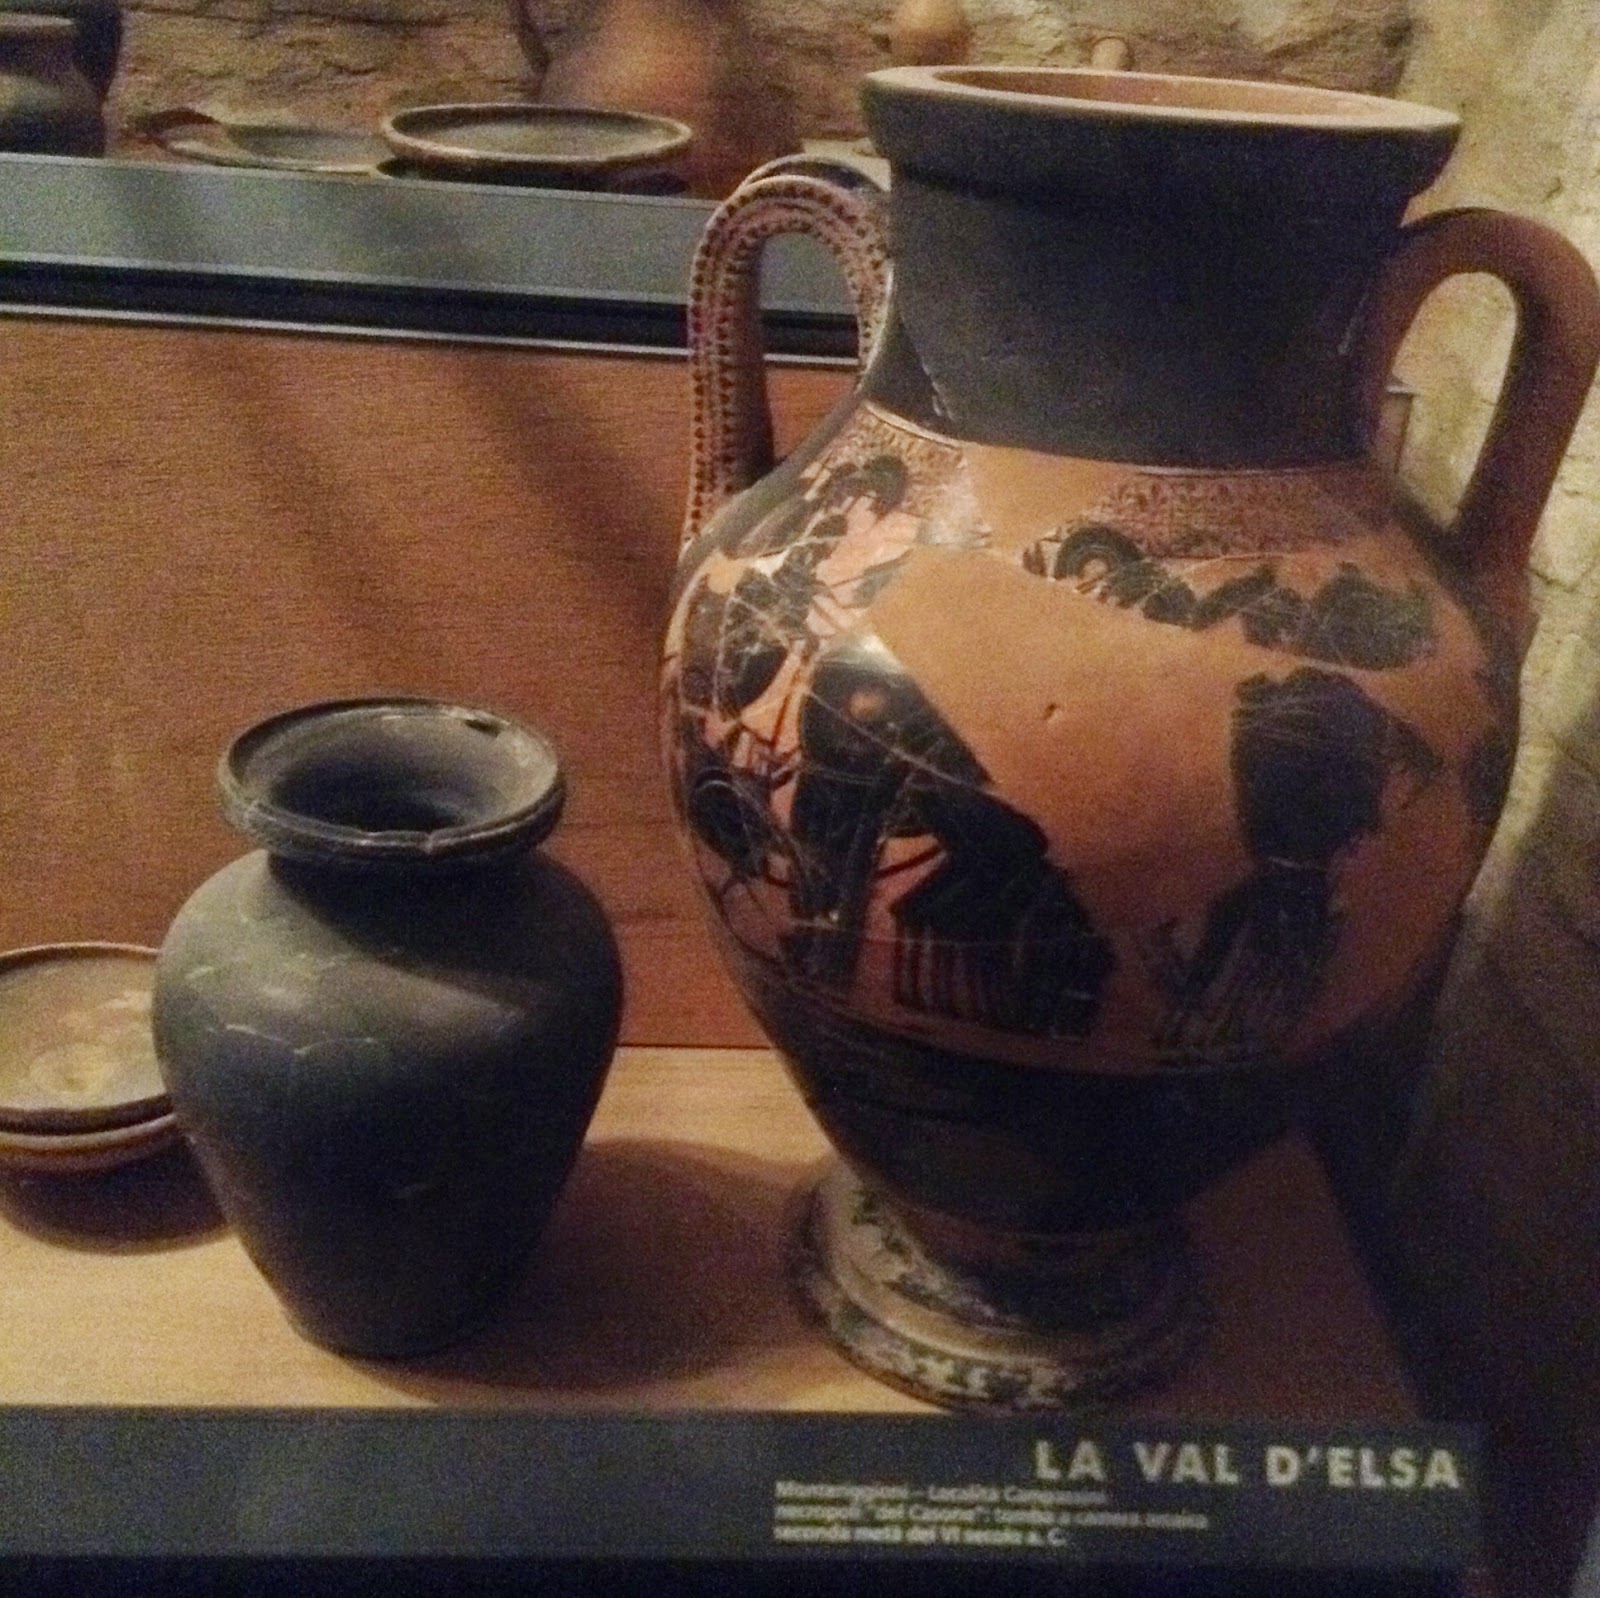 Museo Archeologico di Siena: kelebe, vaso di vernice nera usato come cinerario